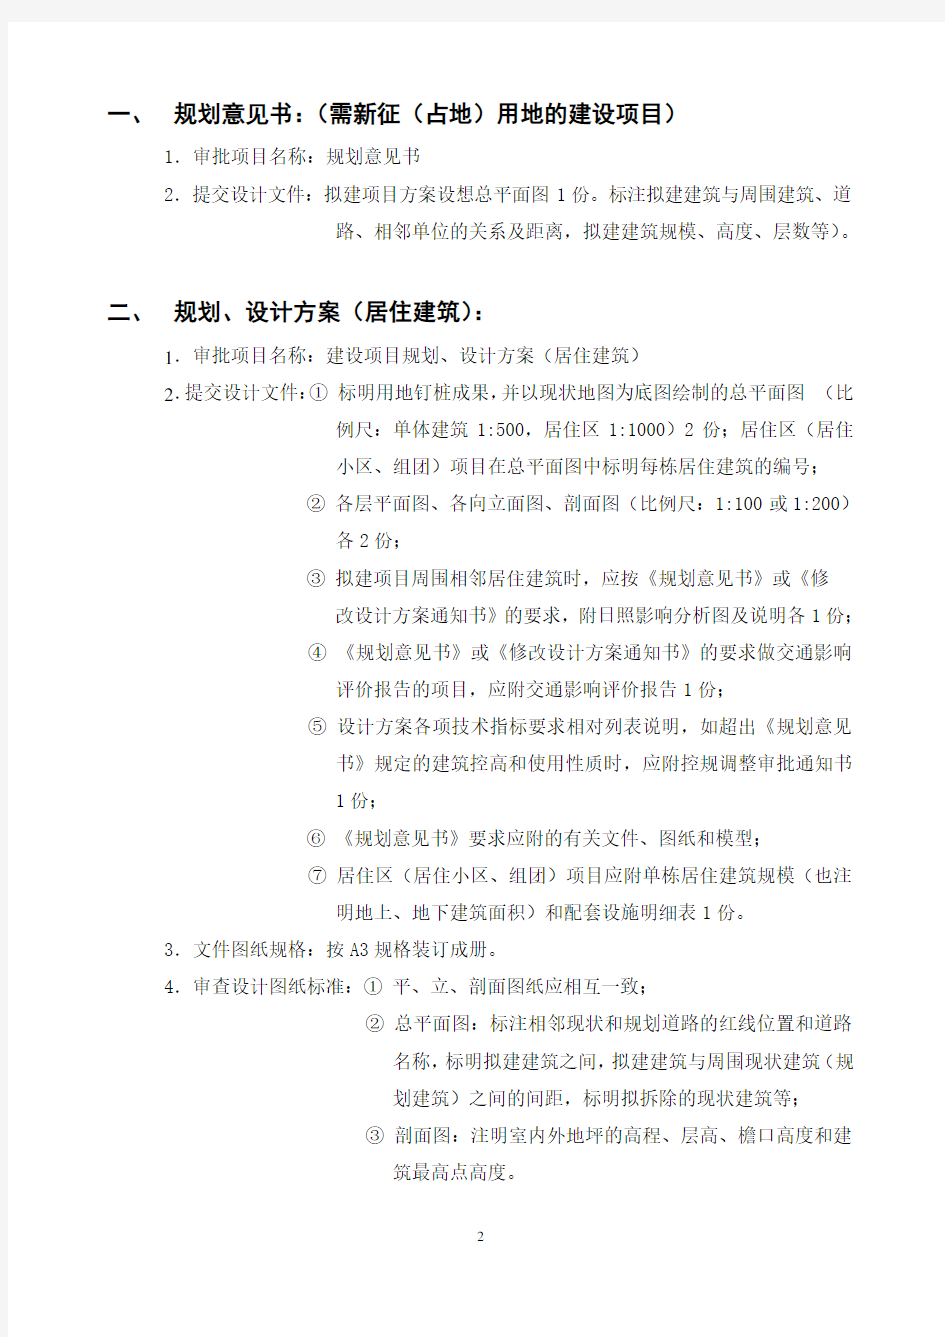 建筑设计各阶段报批要点及所需图纸(北京参考)